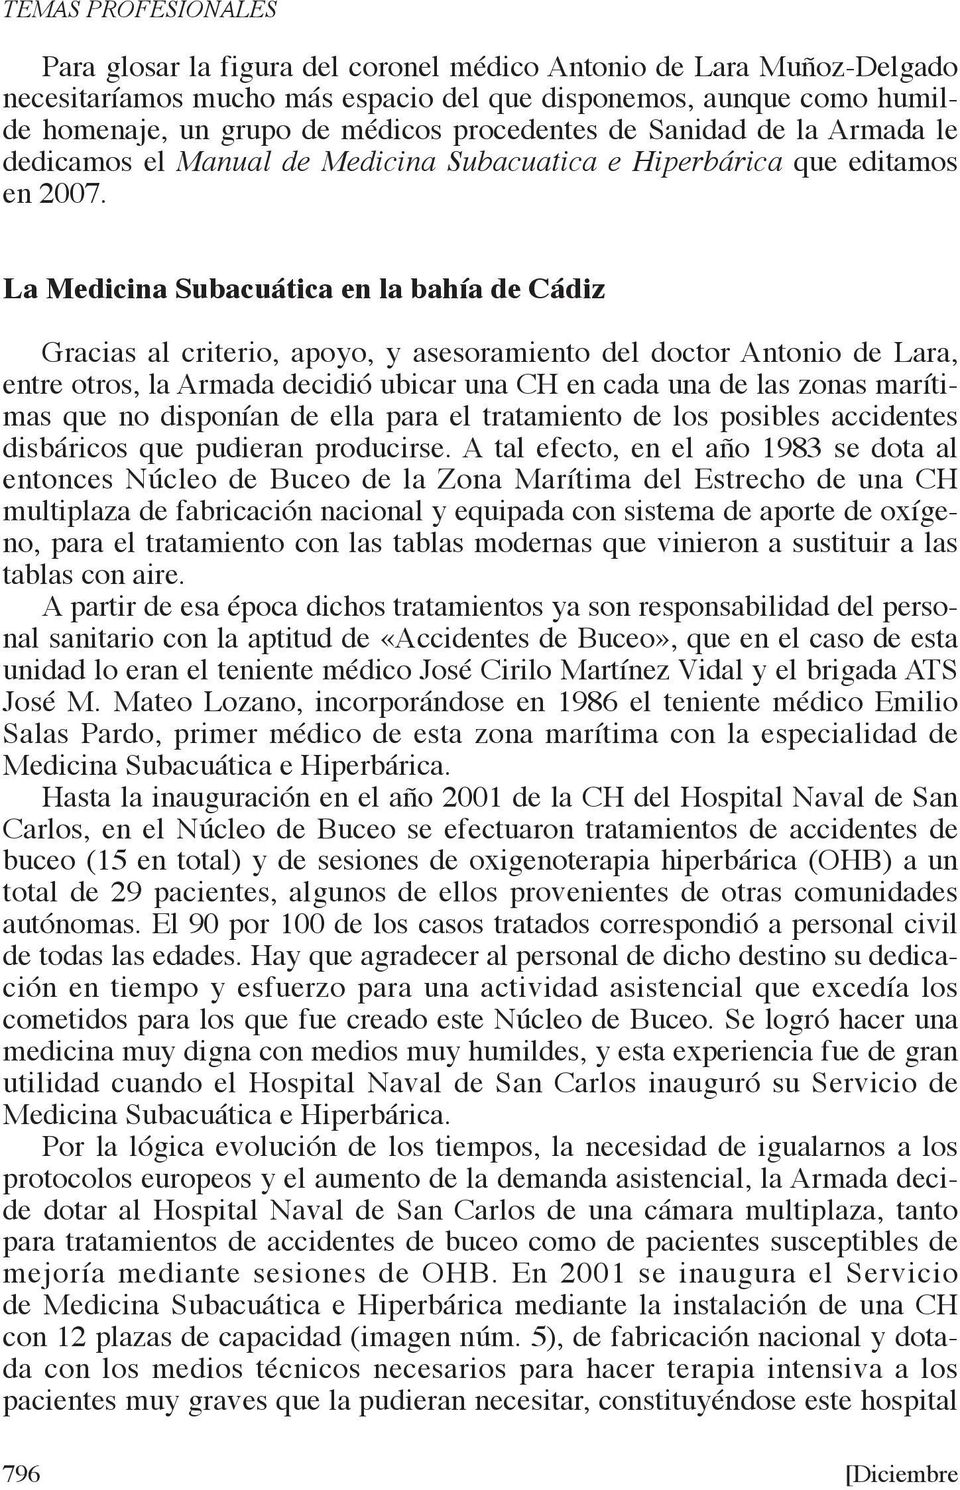 la medicina subacuática en la bahía de Cádiz Gracias al criterio, apoyo, y asesoramiento del doctor Antonio de Lara, entre otros, la Armada decidió ubicar una CH en cada una de las zonas marítimas